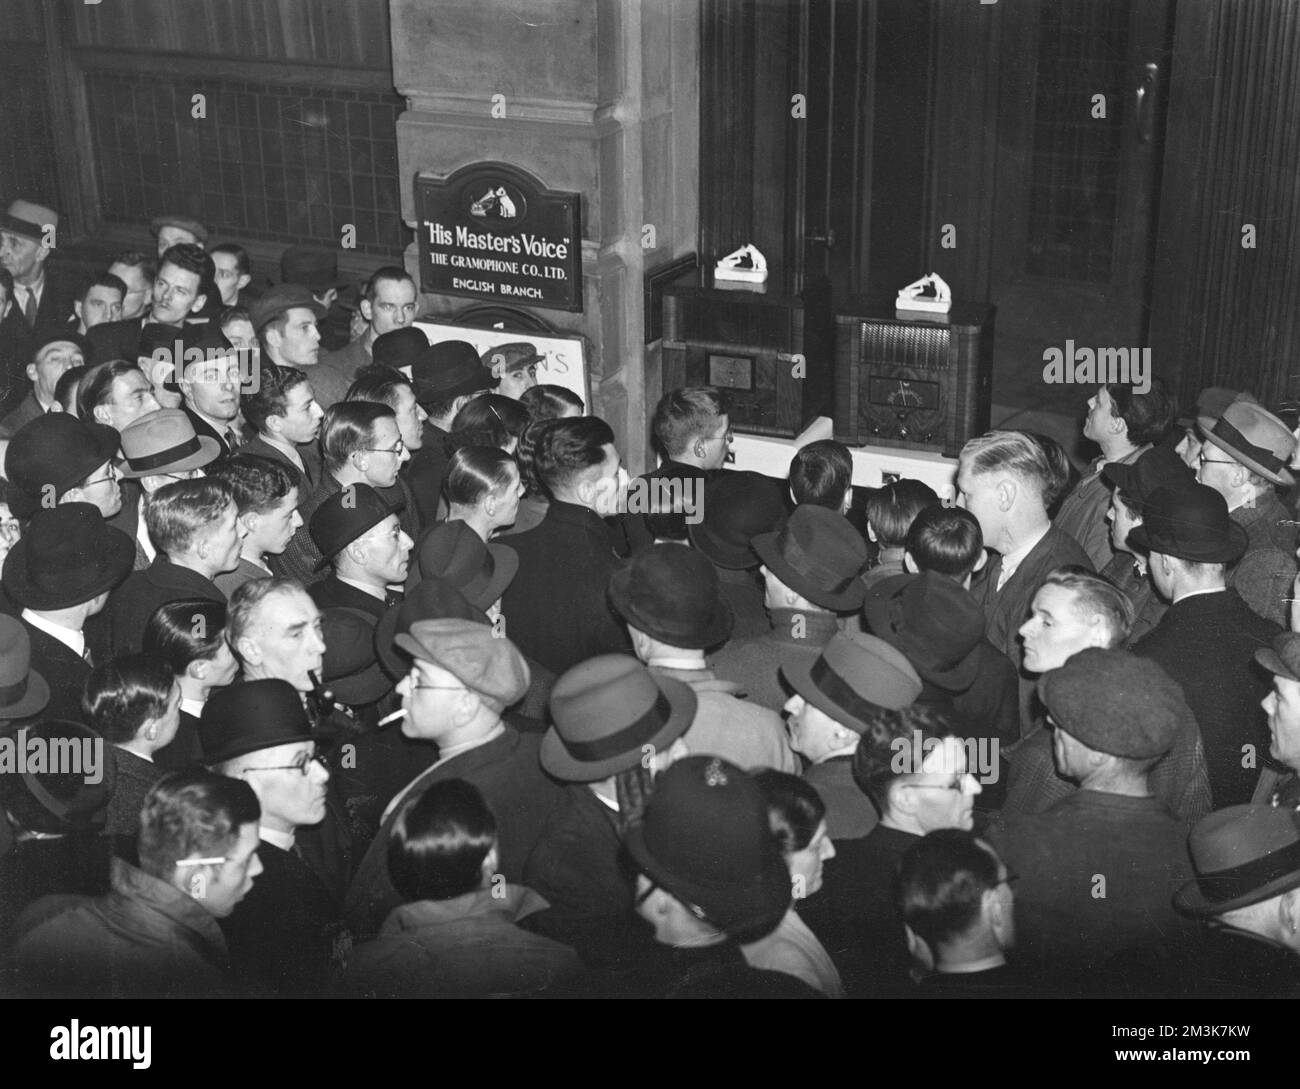 Des foules écoutent des radios installées par sa voix de maître à l'extérieur de leurs bureaux de Clerkenwell en décembre 1936 pour le discours abdication du roi Edward VIII. Date: 01/12/1936 Banque D'Images